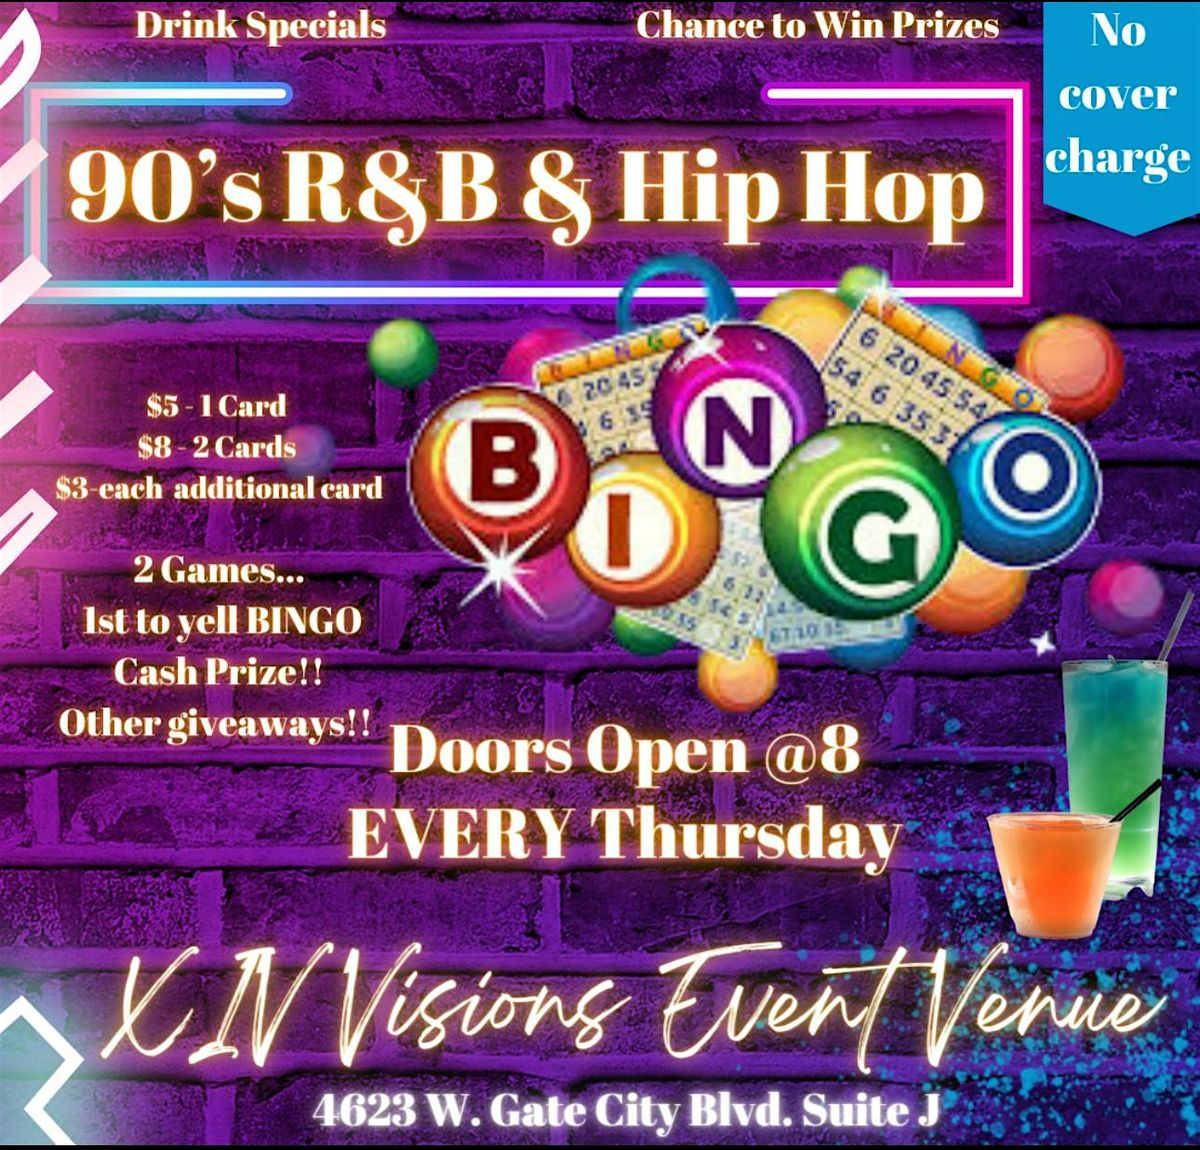 90s R&B and HIP HIP BINGO